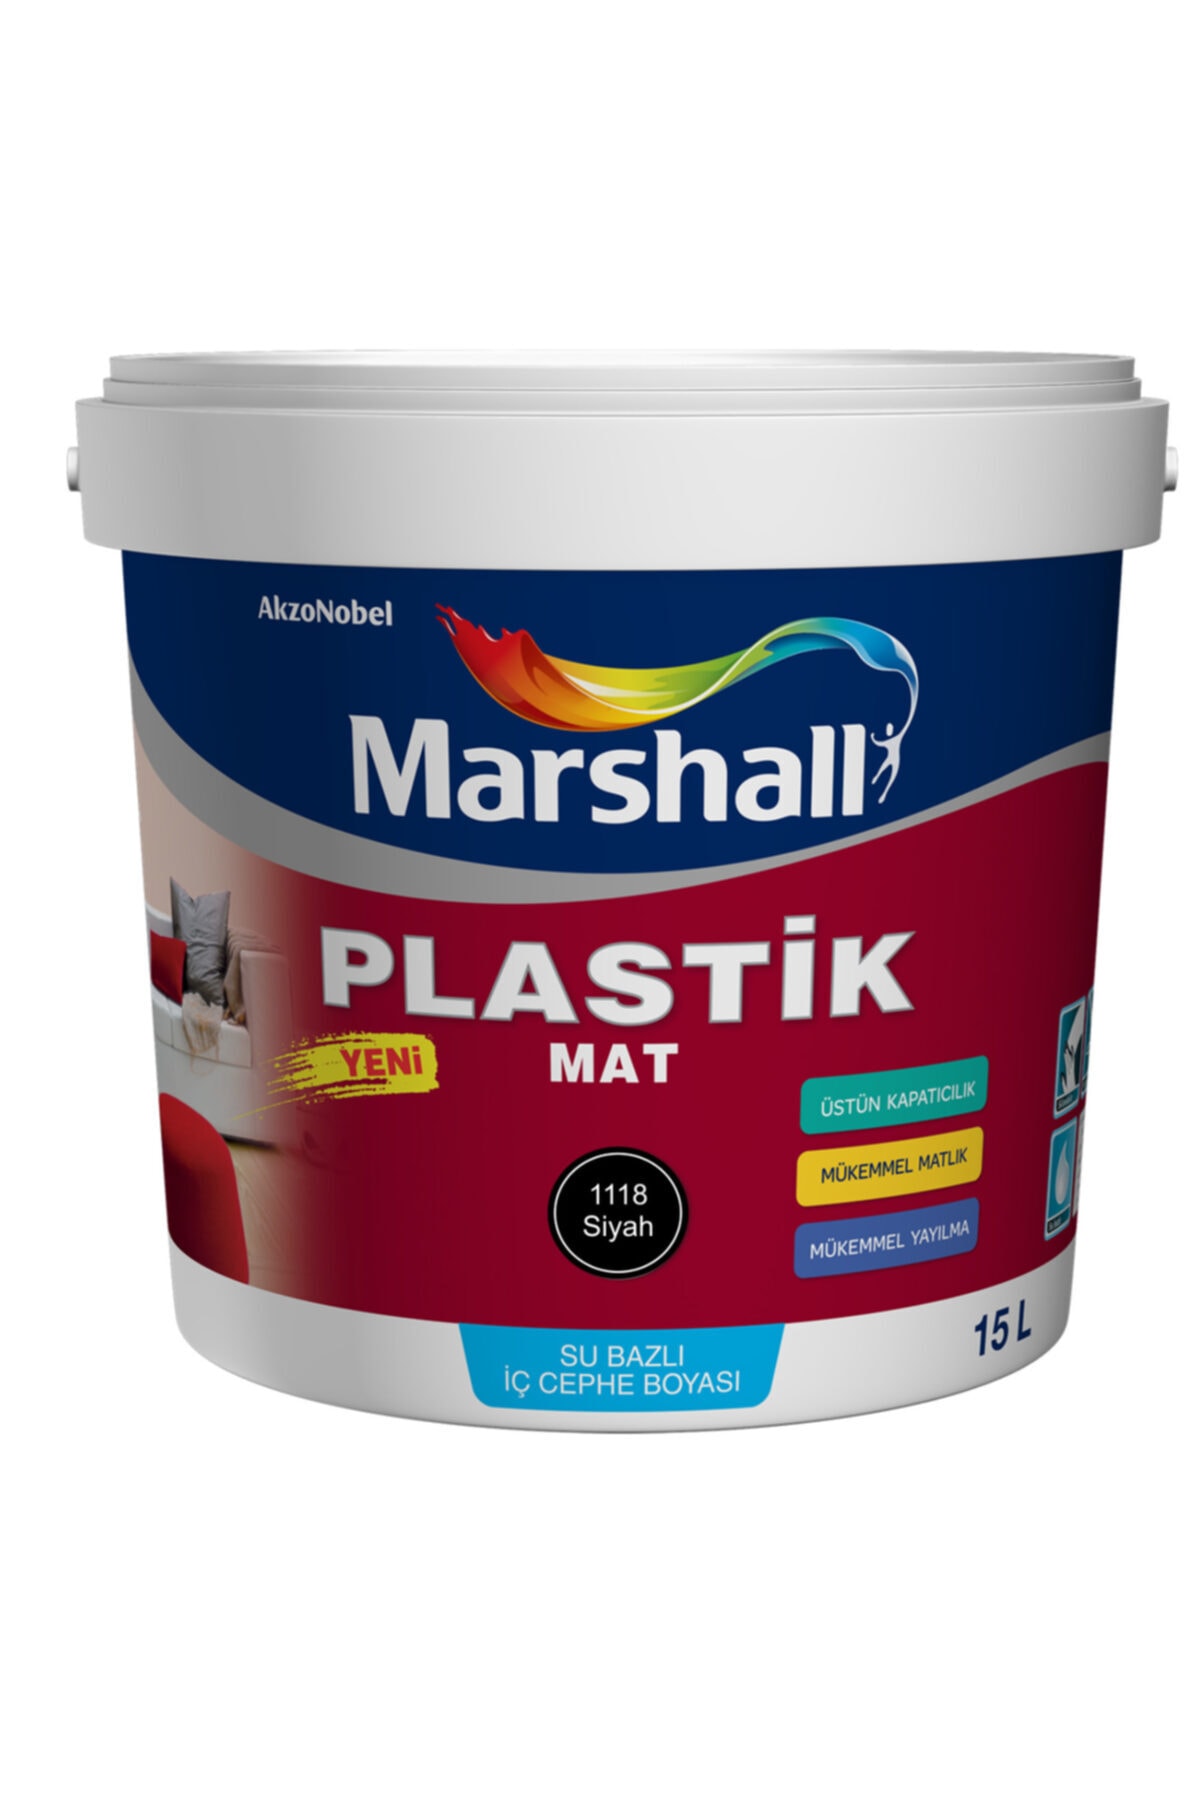 Marshall Plastik Mat Siyah Su Bazlı Iç Duvar Boyası 2.5lt=4kg-silinebilir-mükemmel Matlık-örtücülük